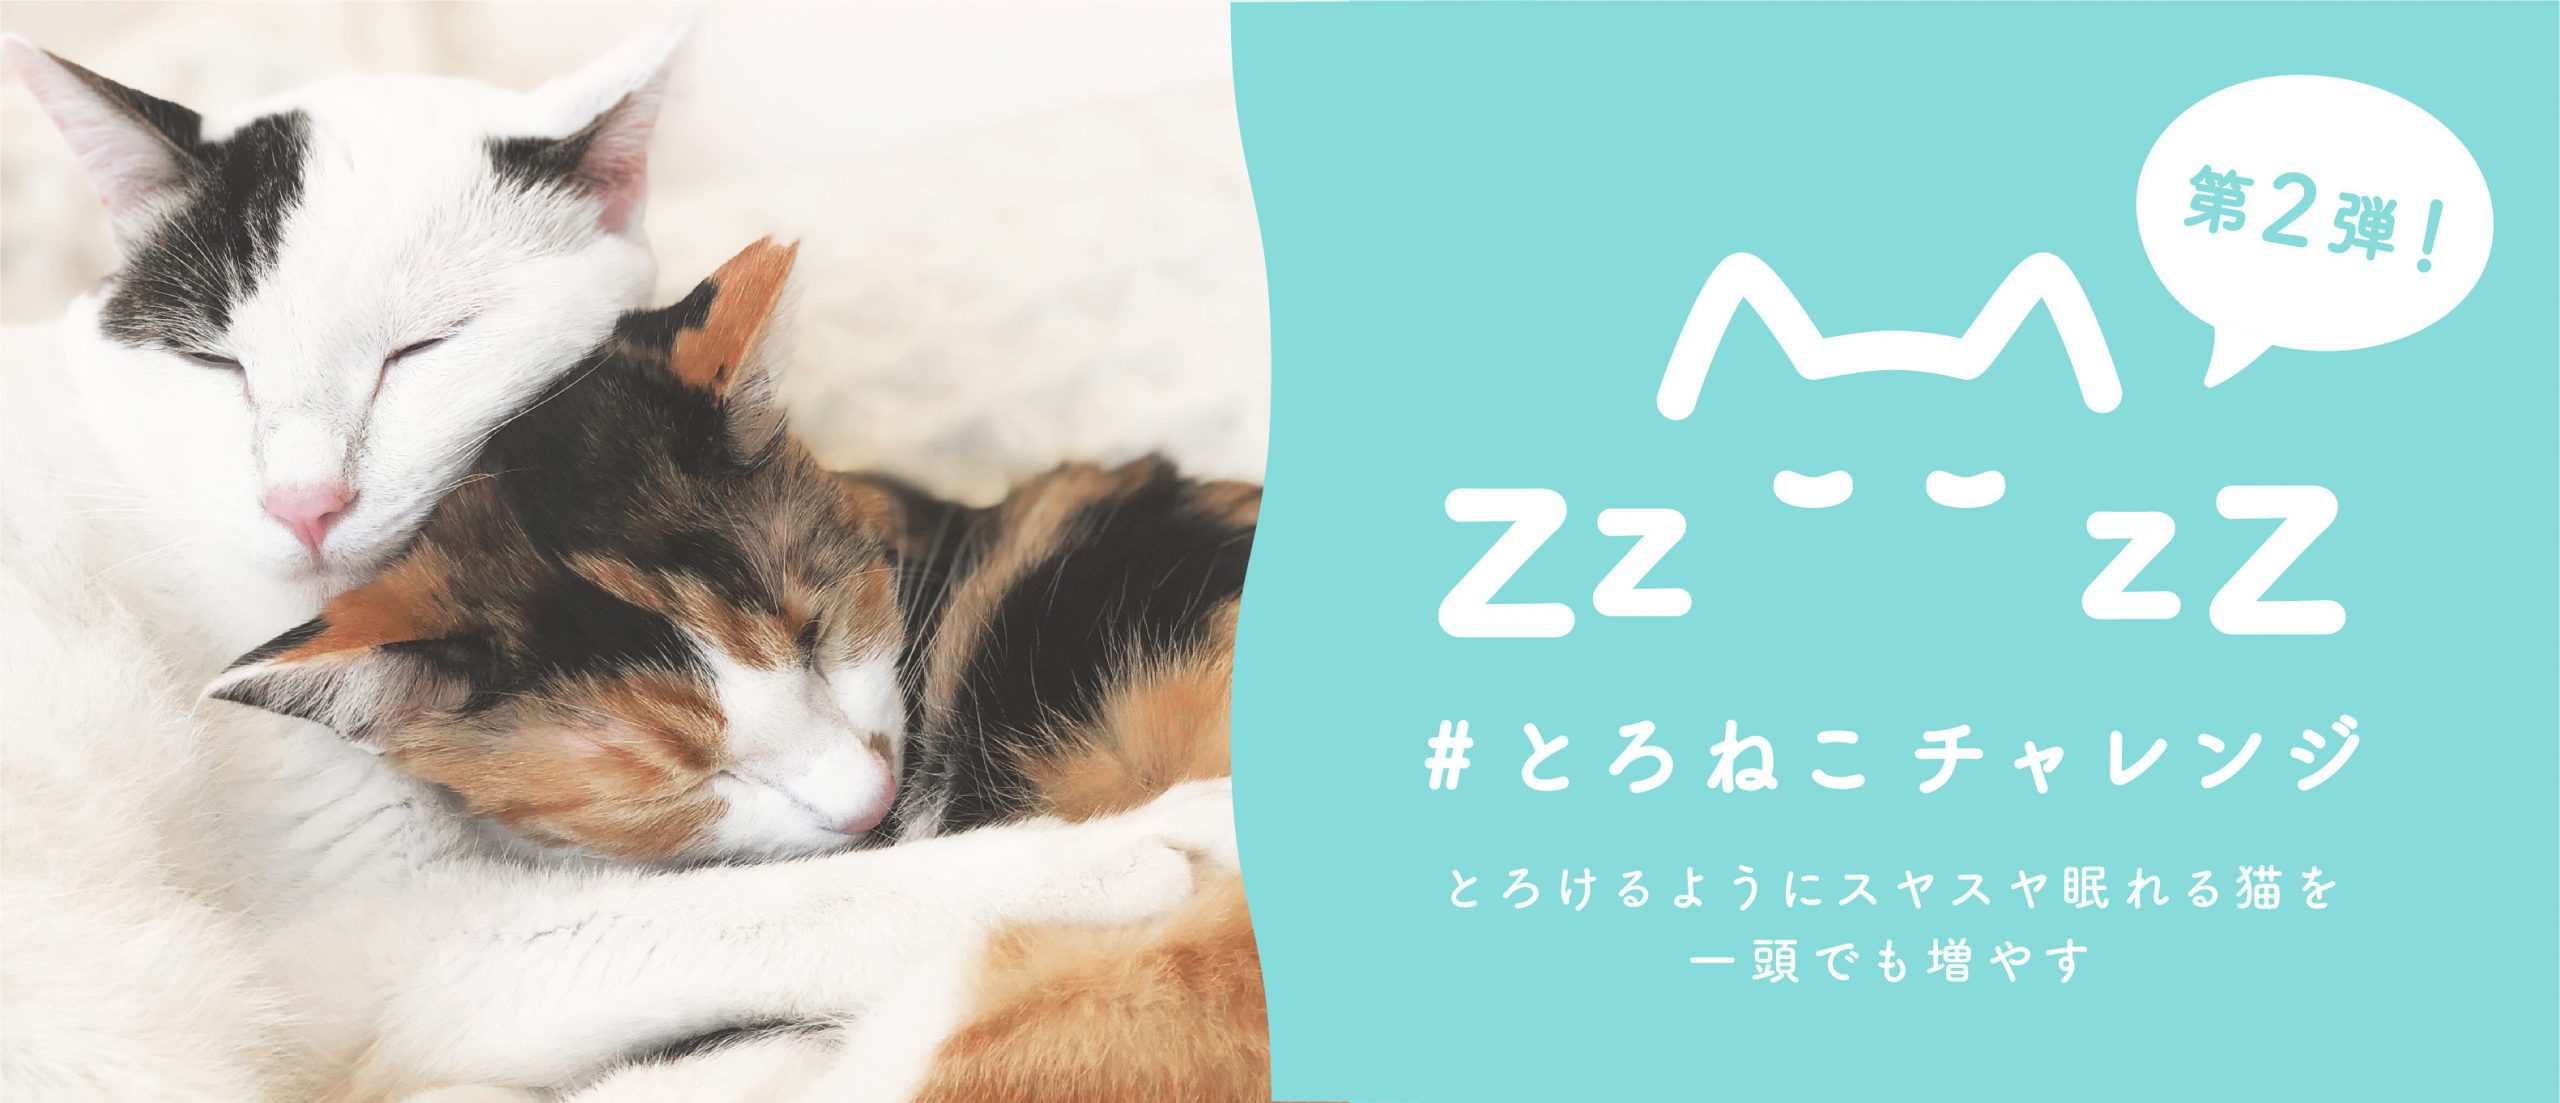 眠る猫を投稿して1投稿につき10円が保護猫団体に寄付される「#とろねこチャレンジ」第二弾が始動